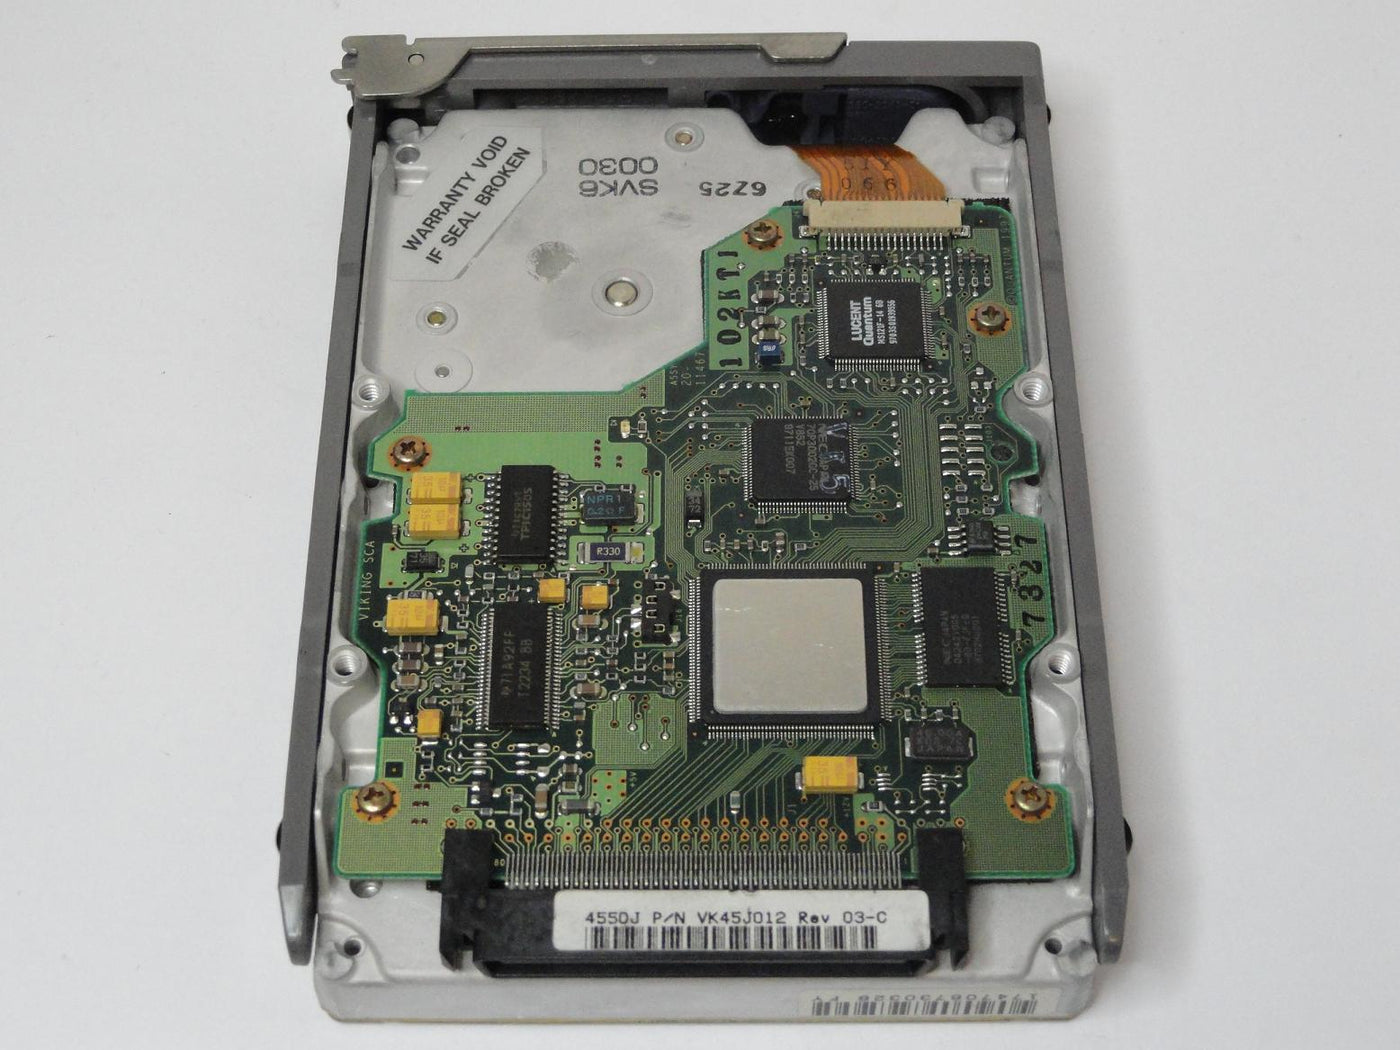 VK45J012 - Quantum SUN Viking 4.5GB SCSI 80 Pin 7200rpm 3.5in HDD in Caddy - Refurbished